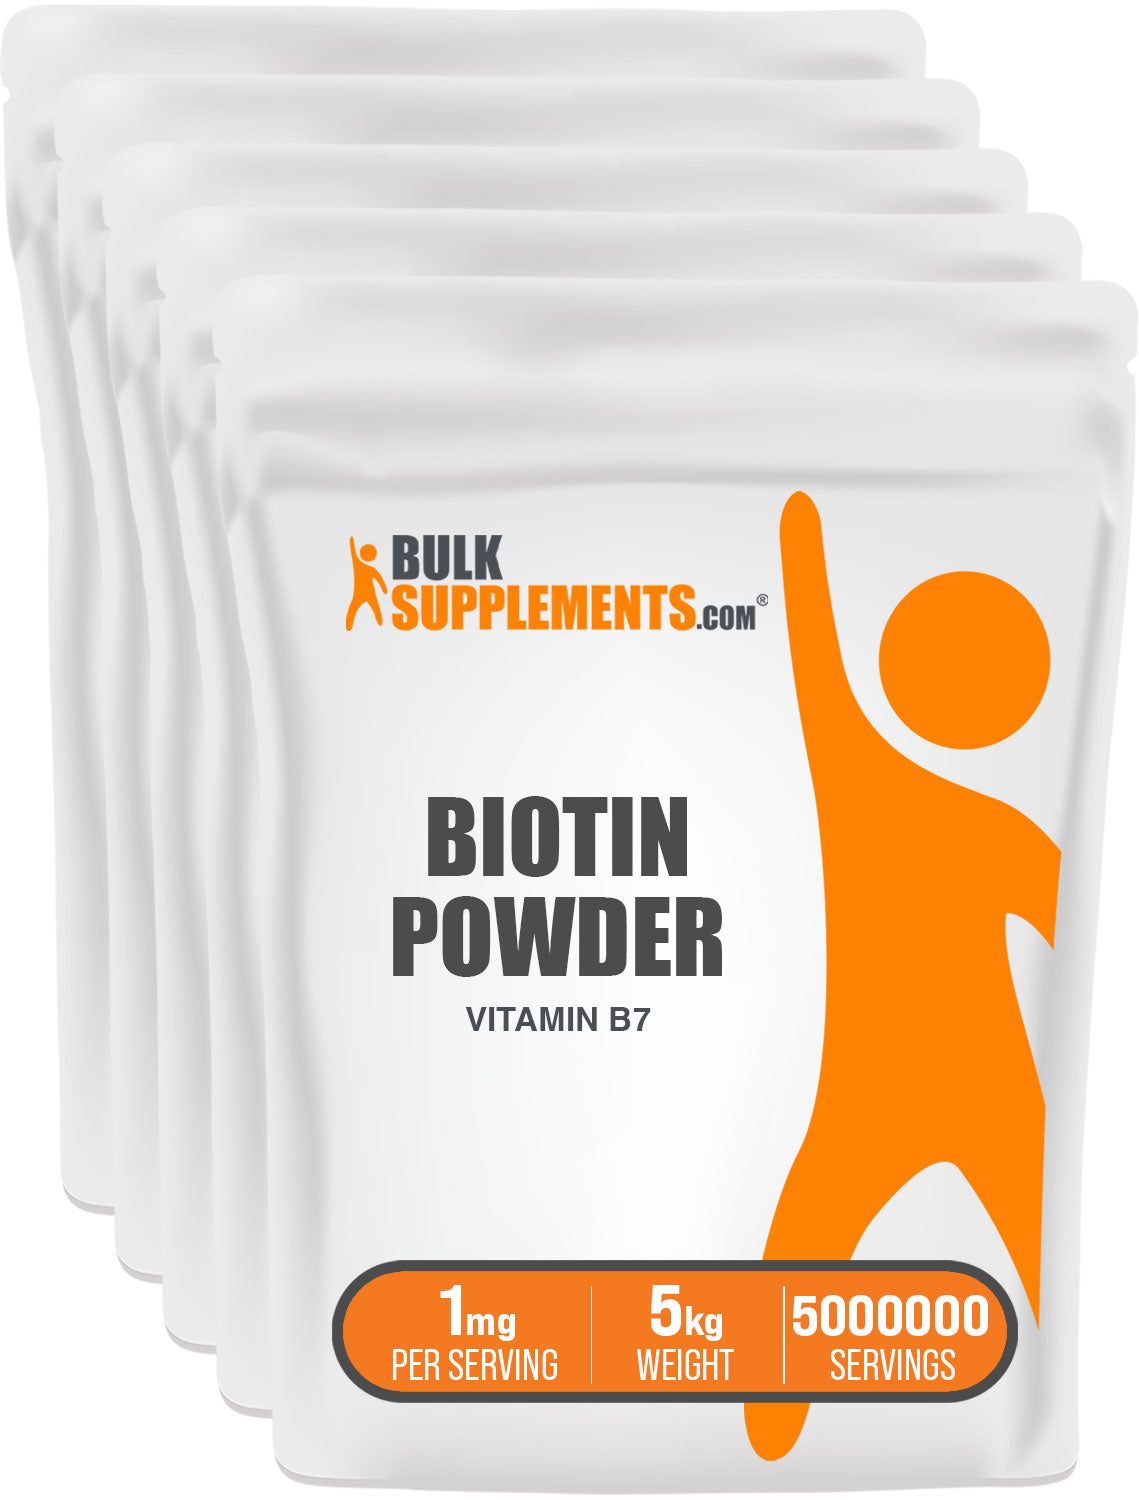 BulkSupplements Biotin Powder Vitamin B7 5kg bags